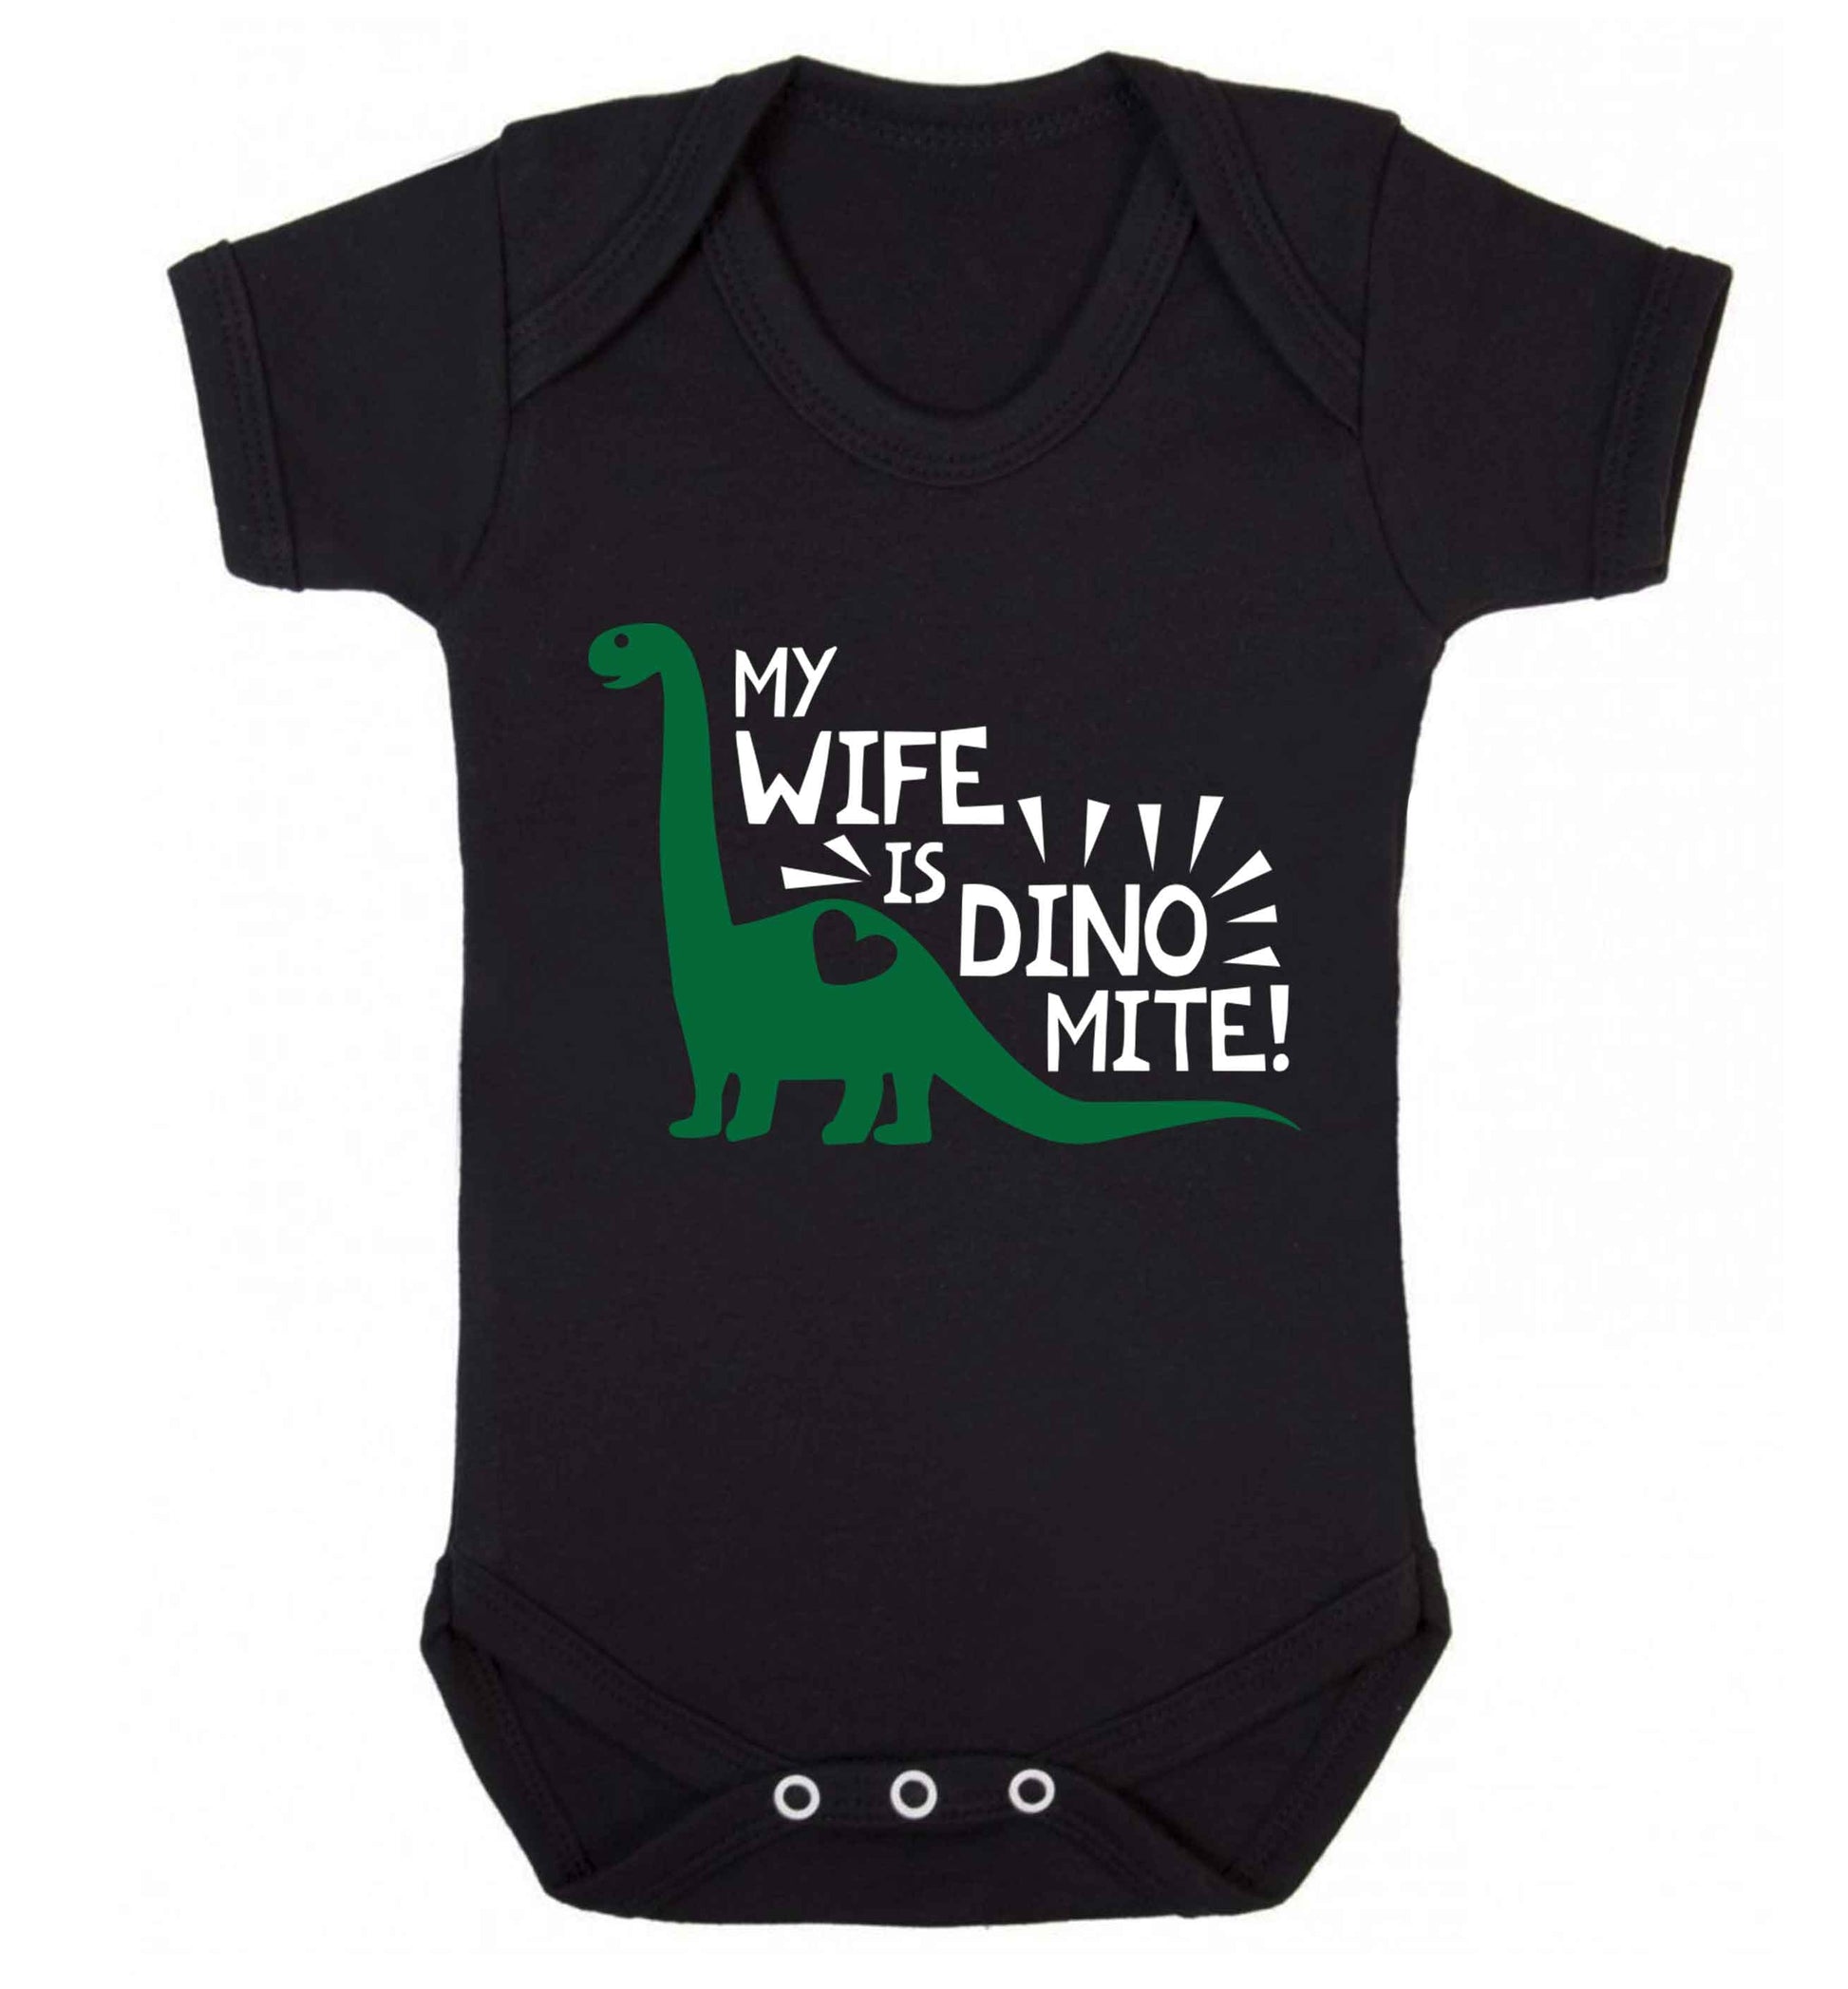 My wife is dinomite! Baby Vest black 18-24 months